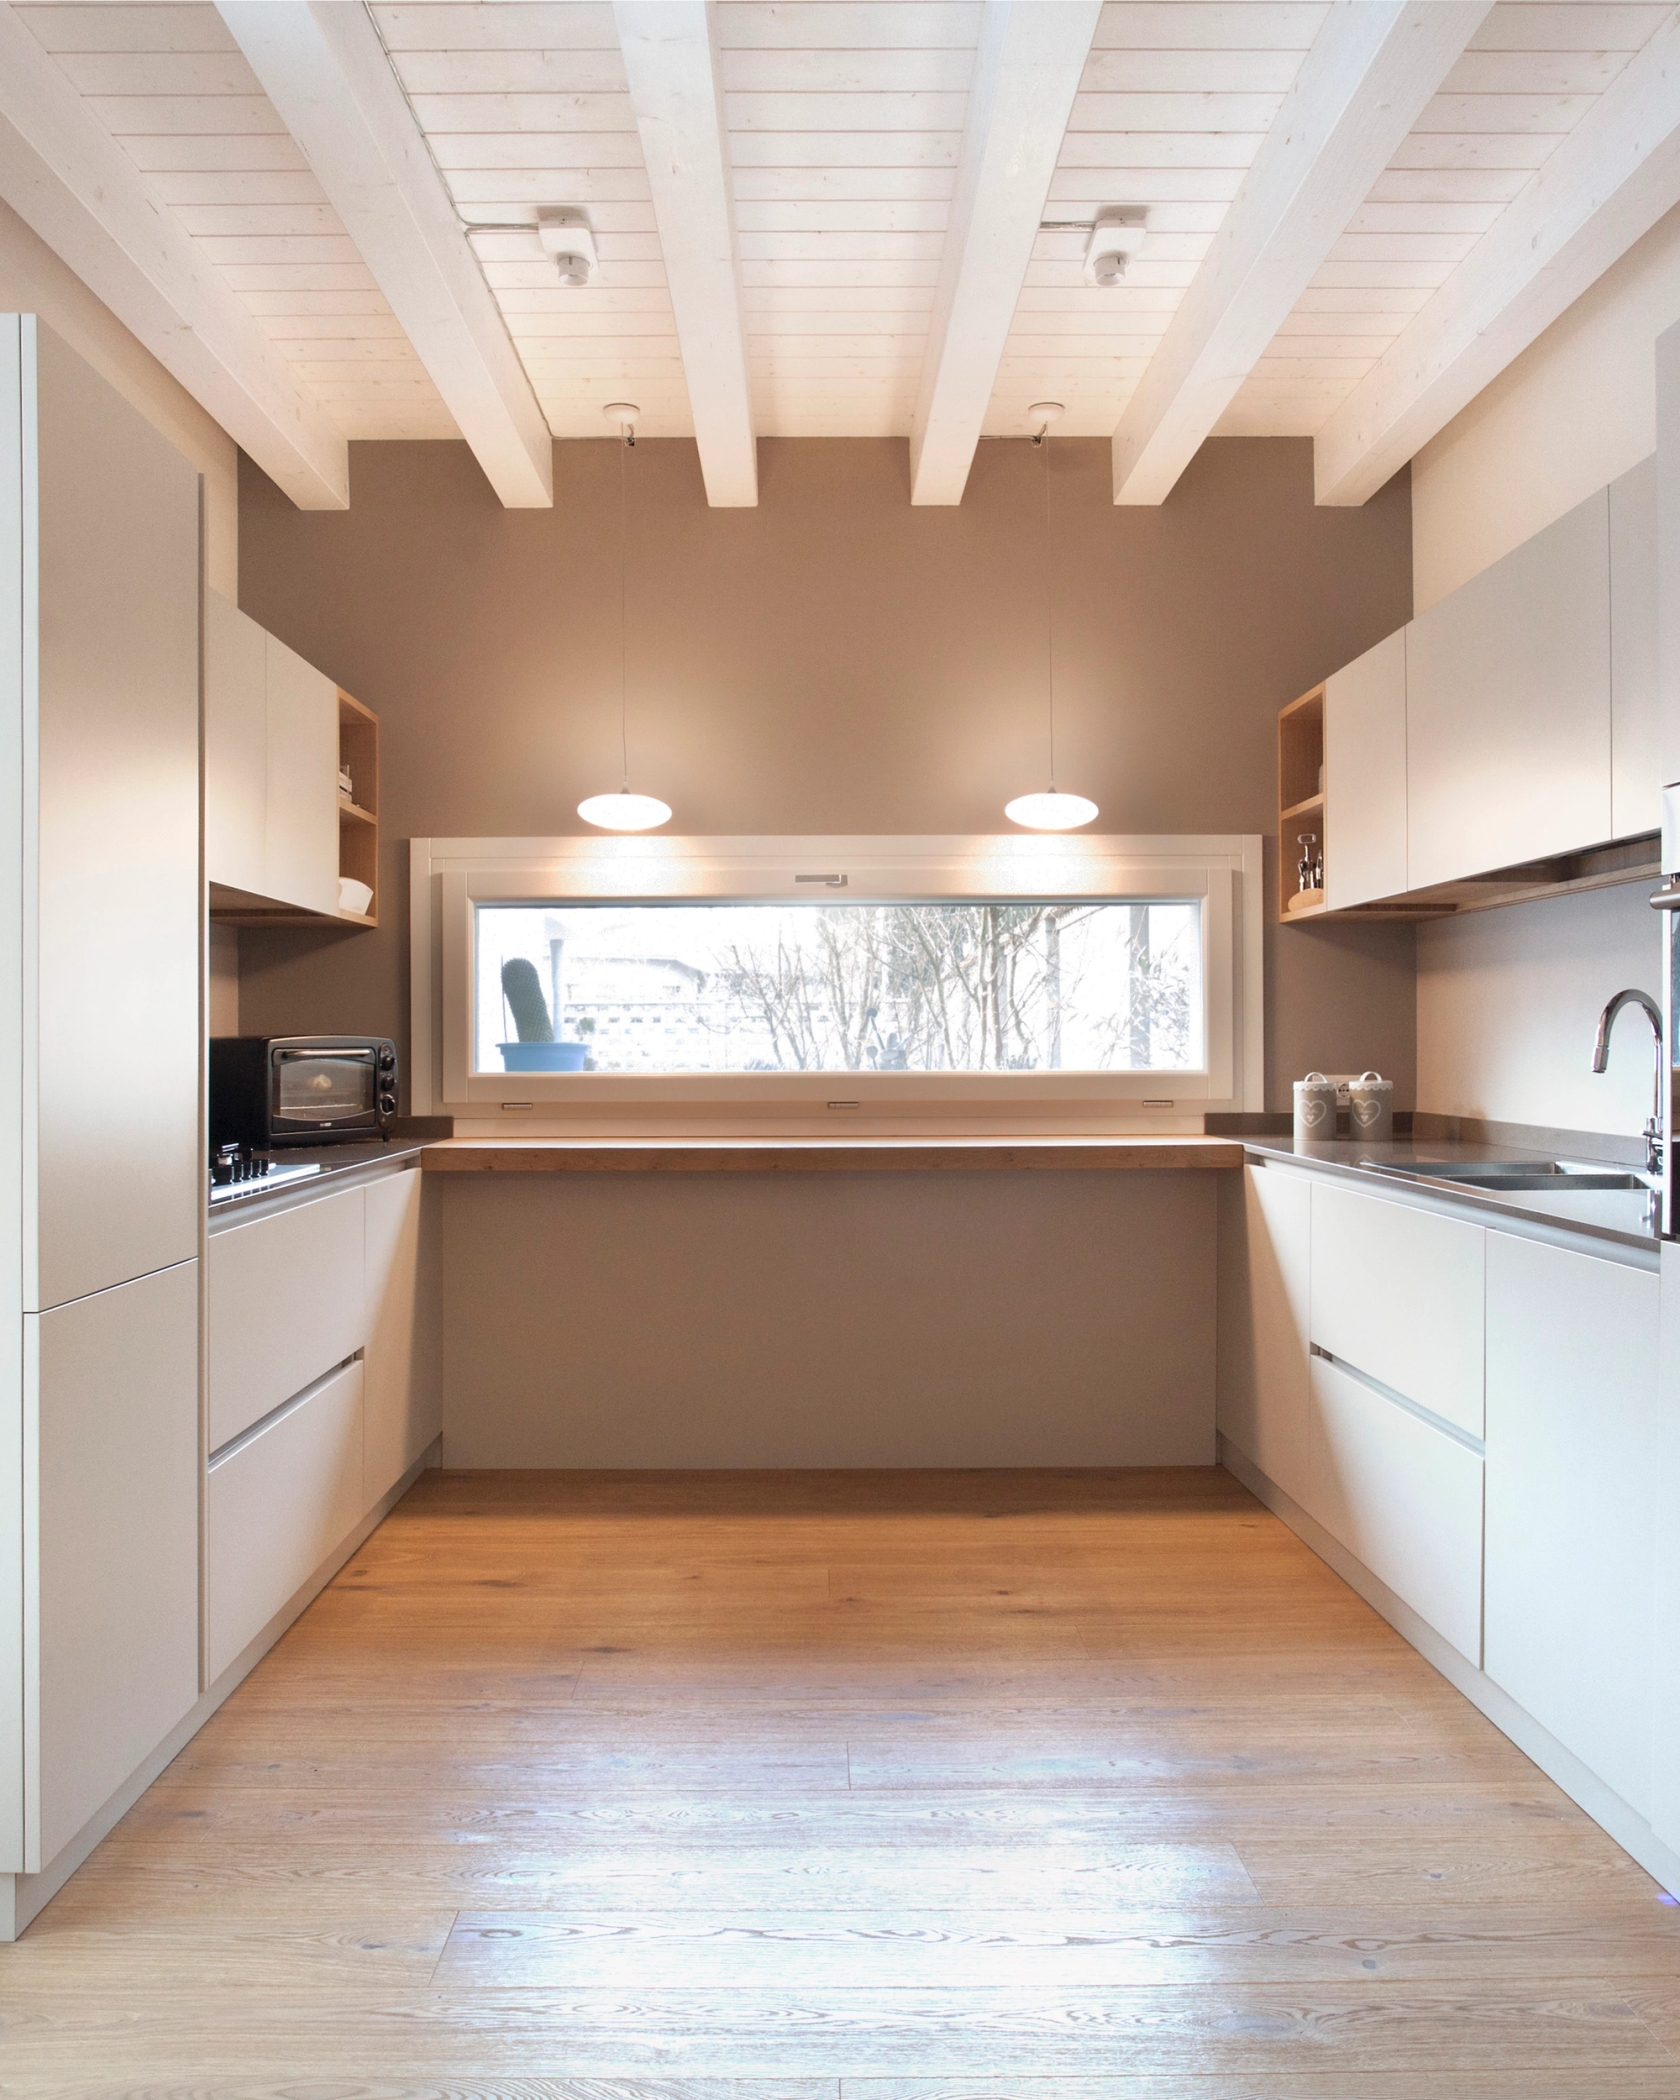 foto a colori di una cucina in legno bianco e soffitto trvato bianco